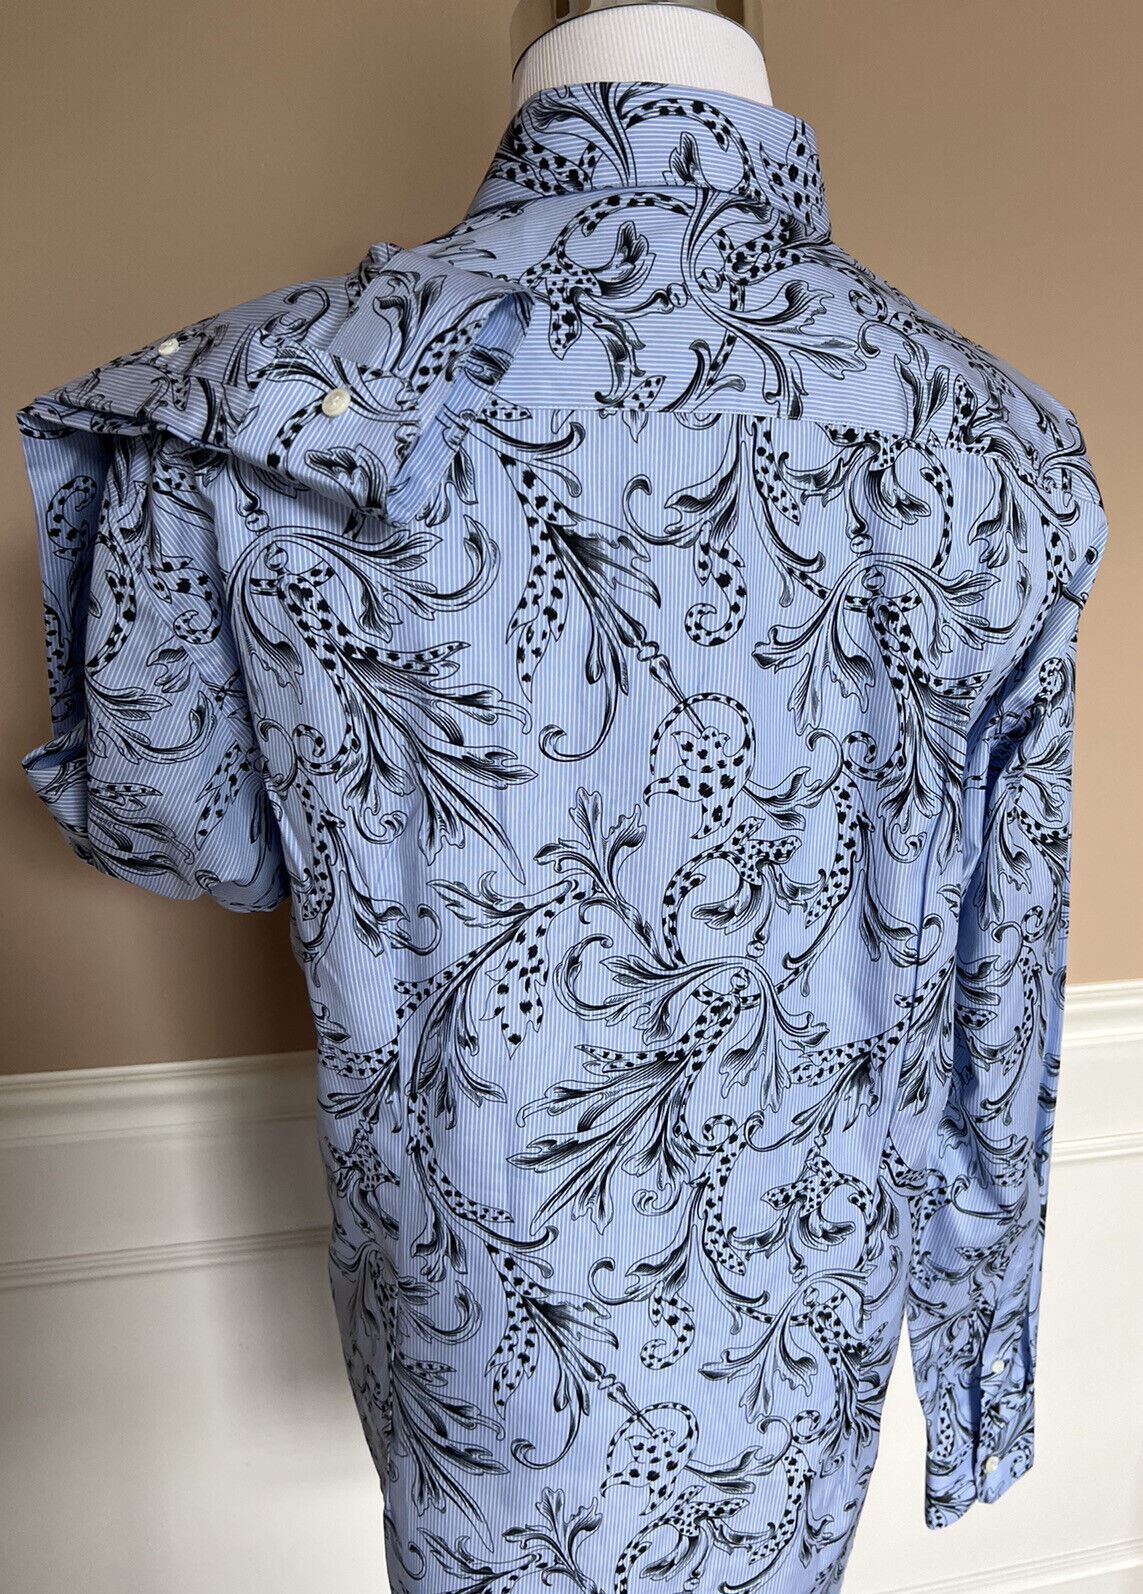 Синяя классическая рубашка Versace с графическим принтом NWT, 850 долларов США, размер 46, A87409, сделано в Италии